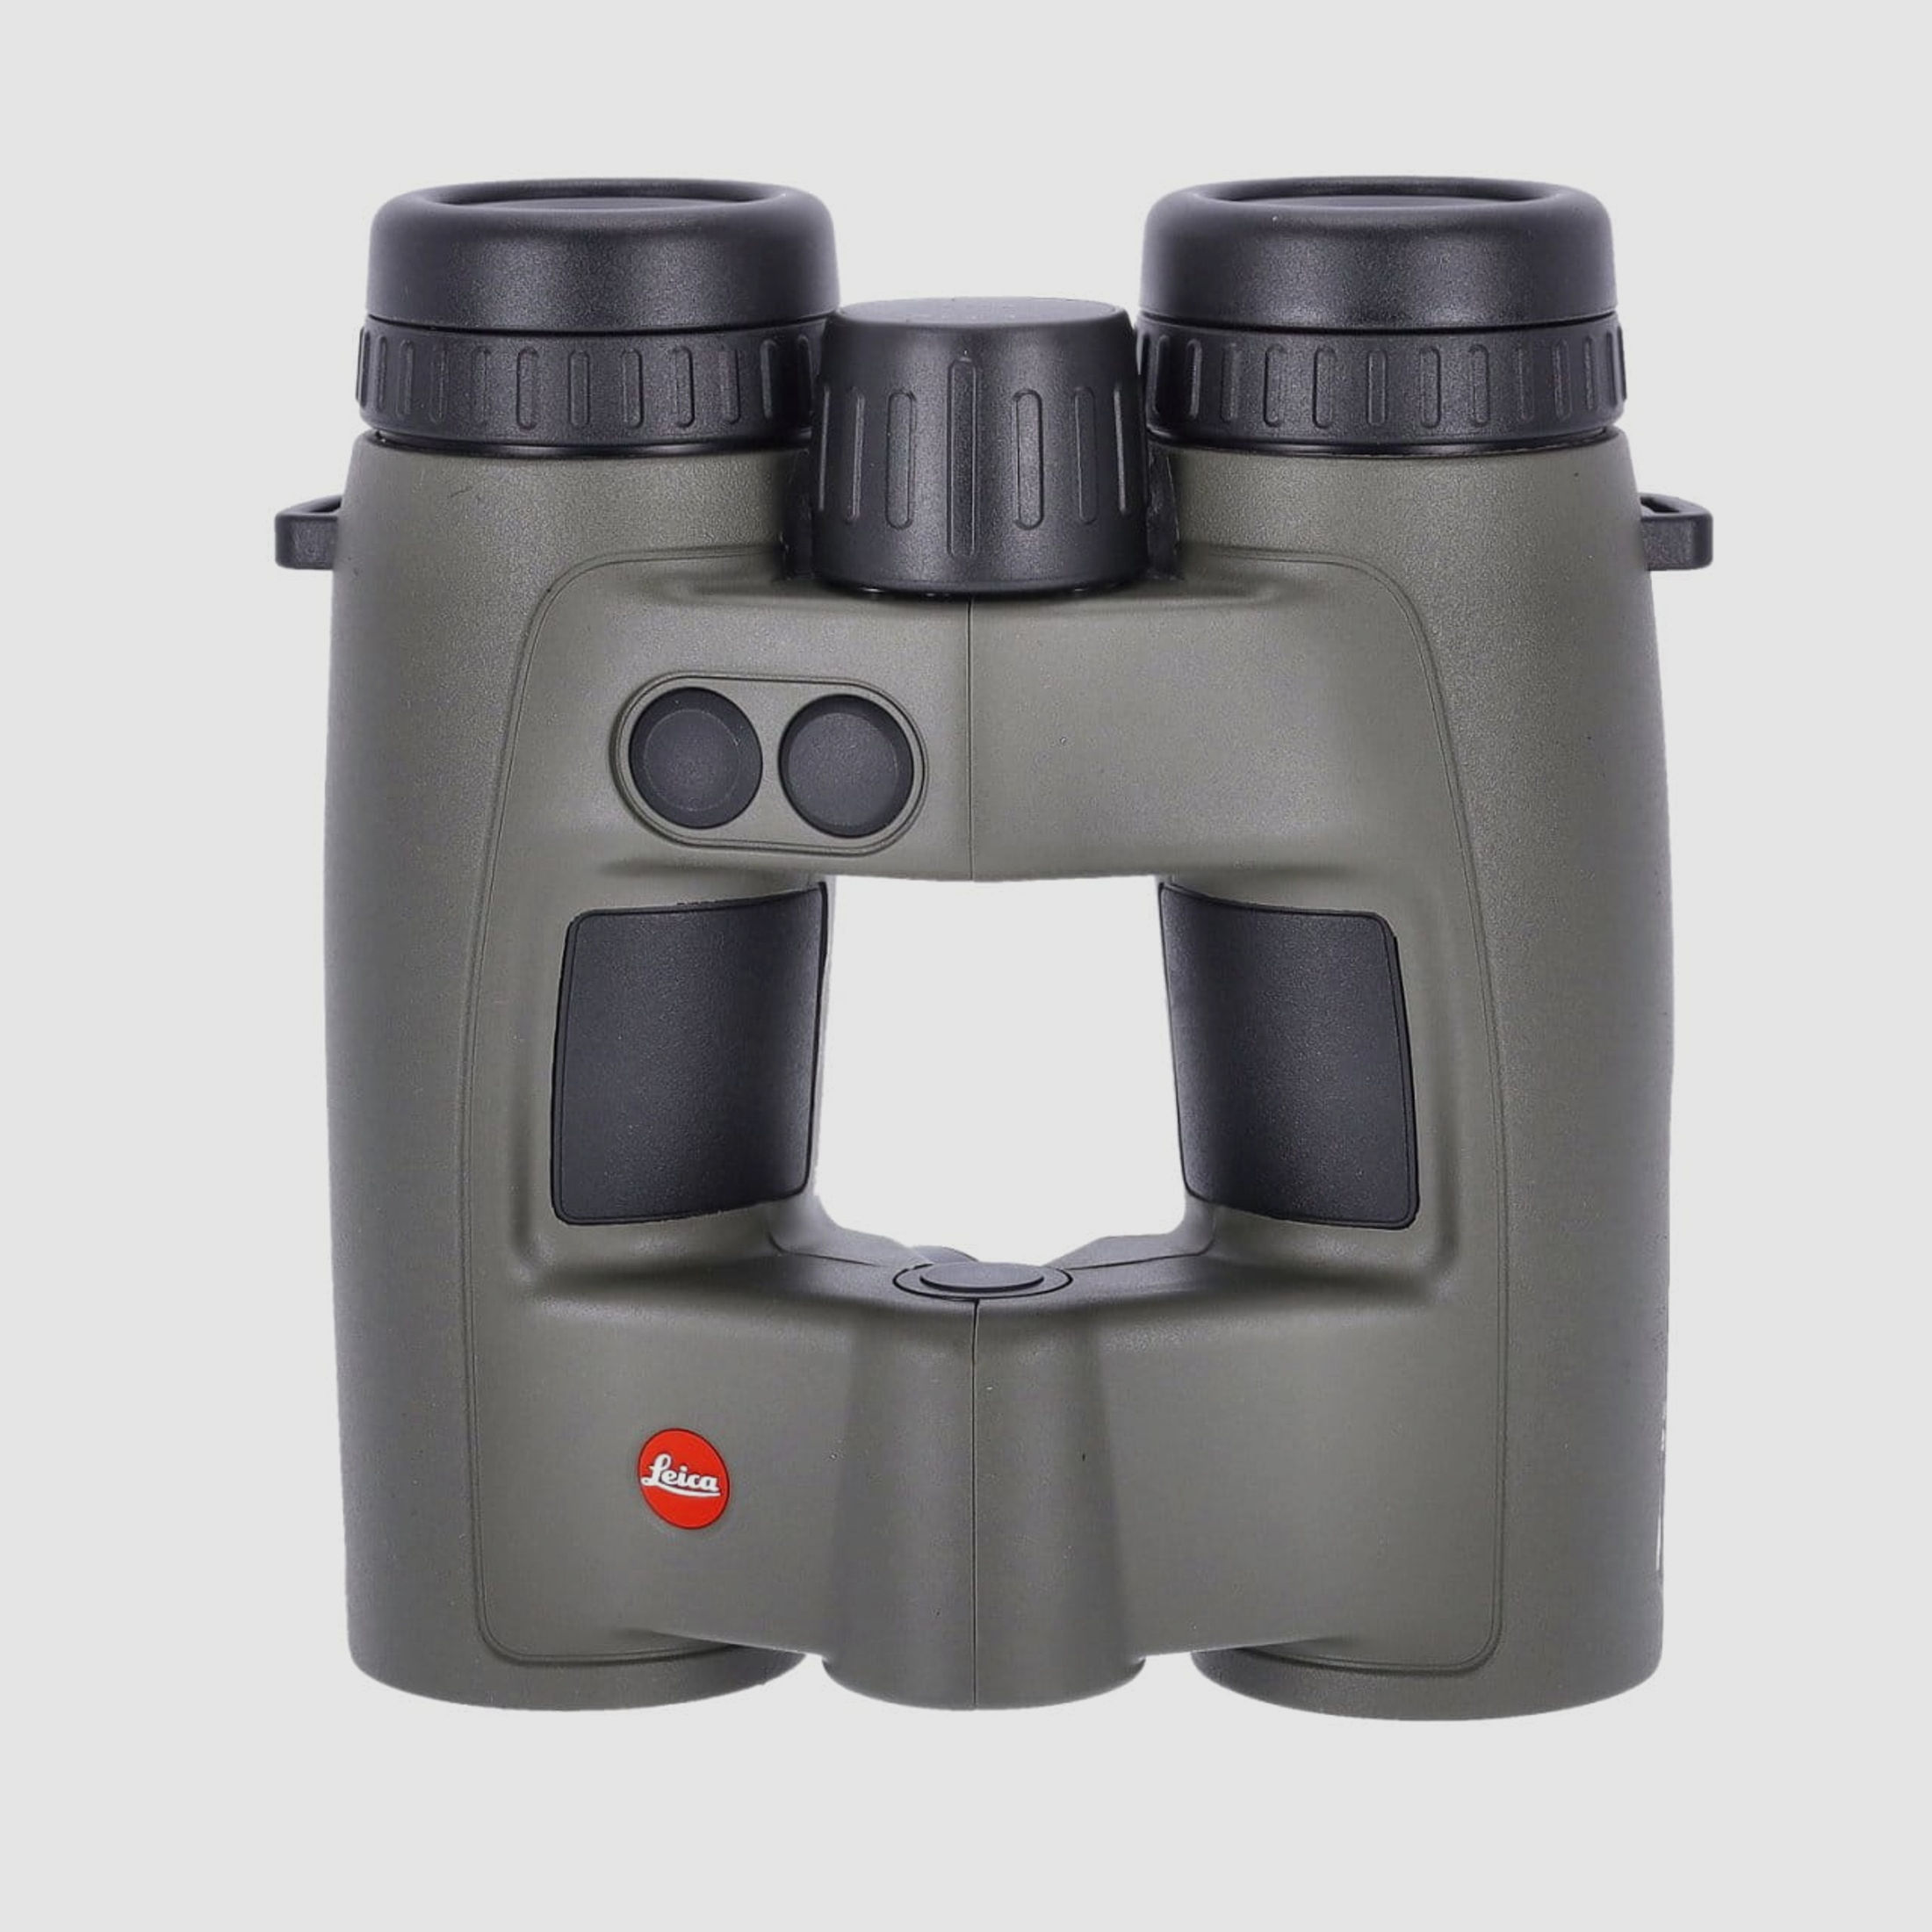 Leica Geovid Pro 8x32 olivgrün Fernglas mit Entfernungsmesser